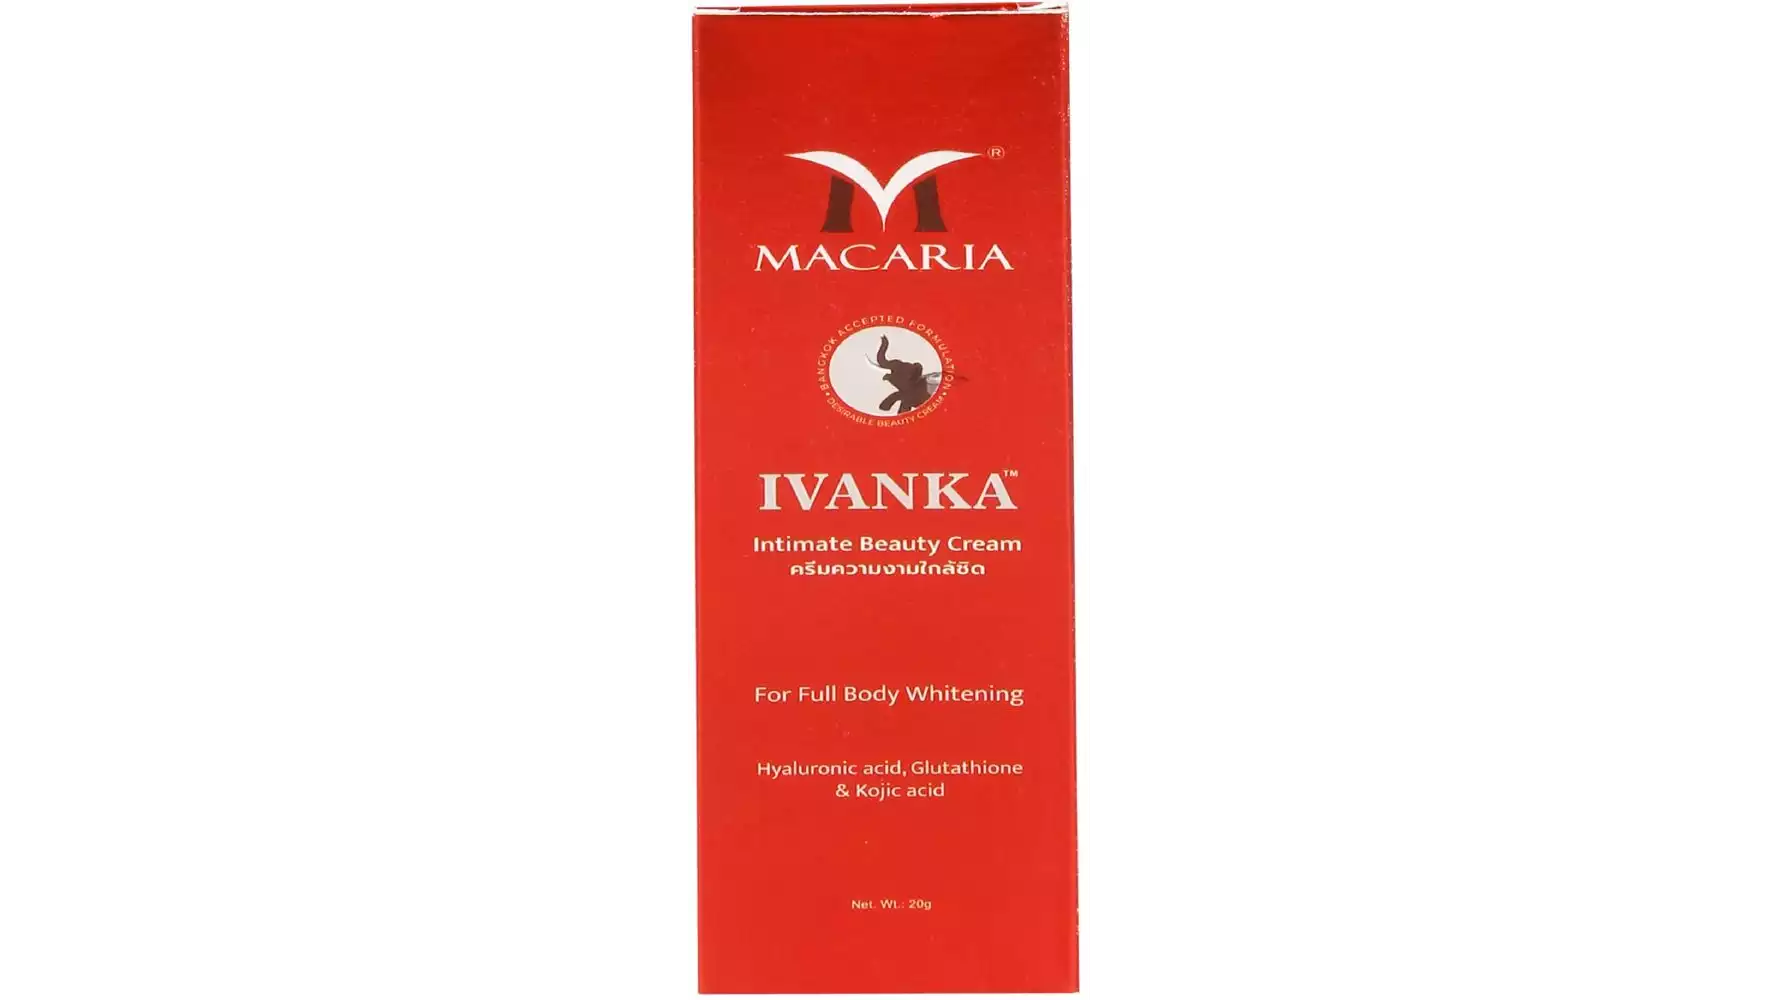 Macaria Ivanka Intimate Beauty Cream {Skin Whitening And Fairness Cream} (20g)